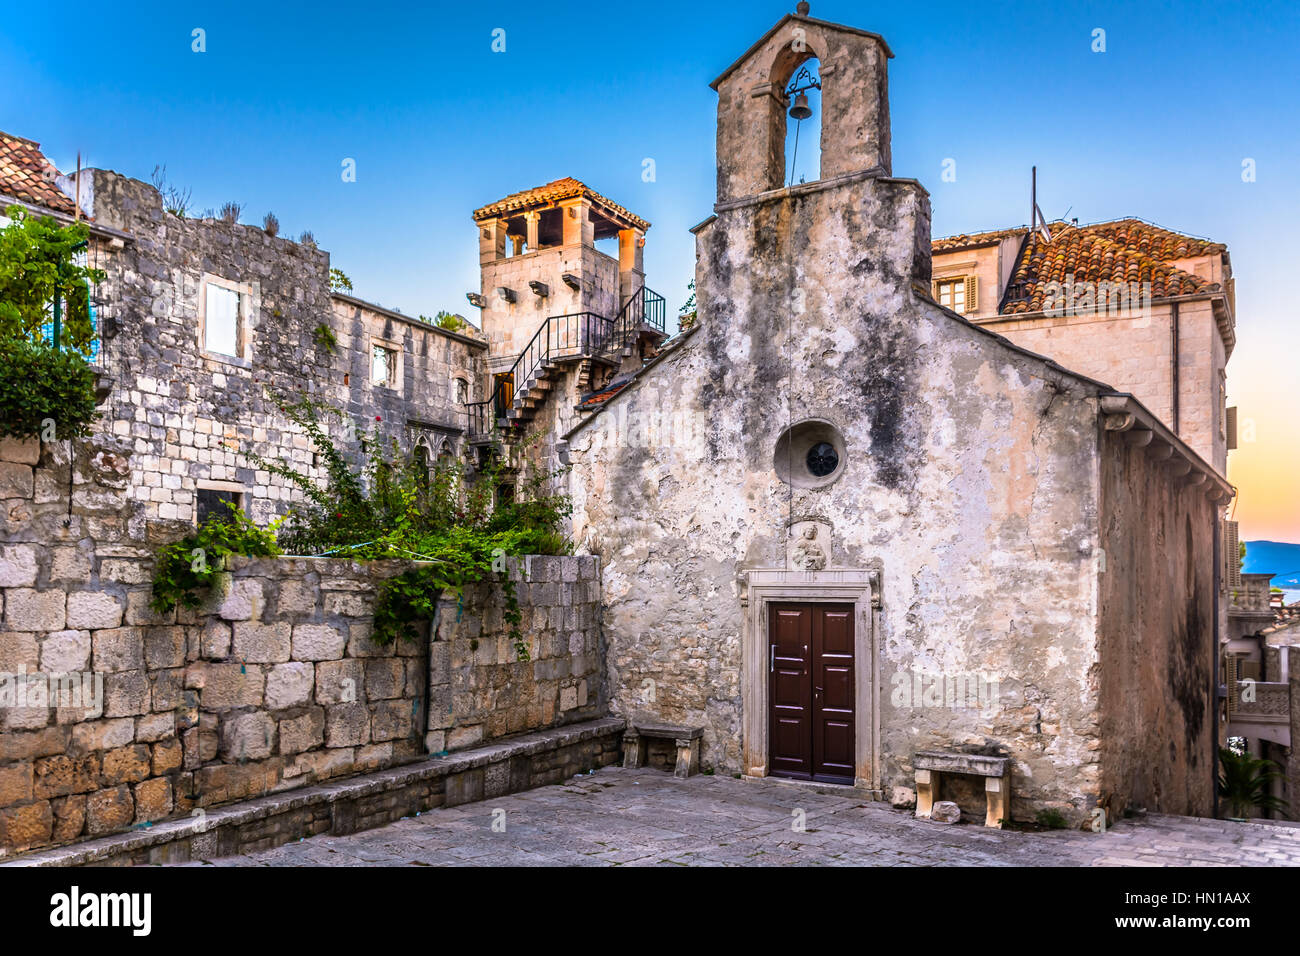 Geburtshaus von Marco Polo in der Stadt Korcula, Kroatien Stockfotografie -  Alamy